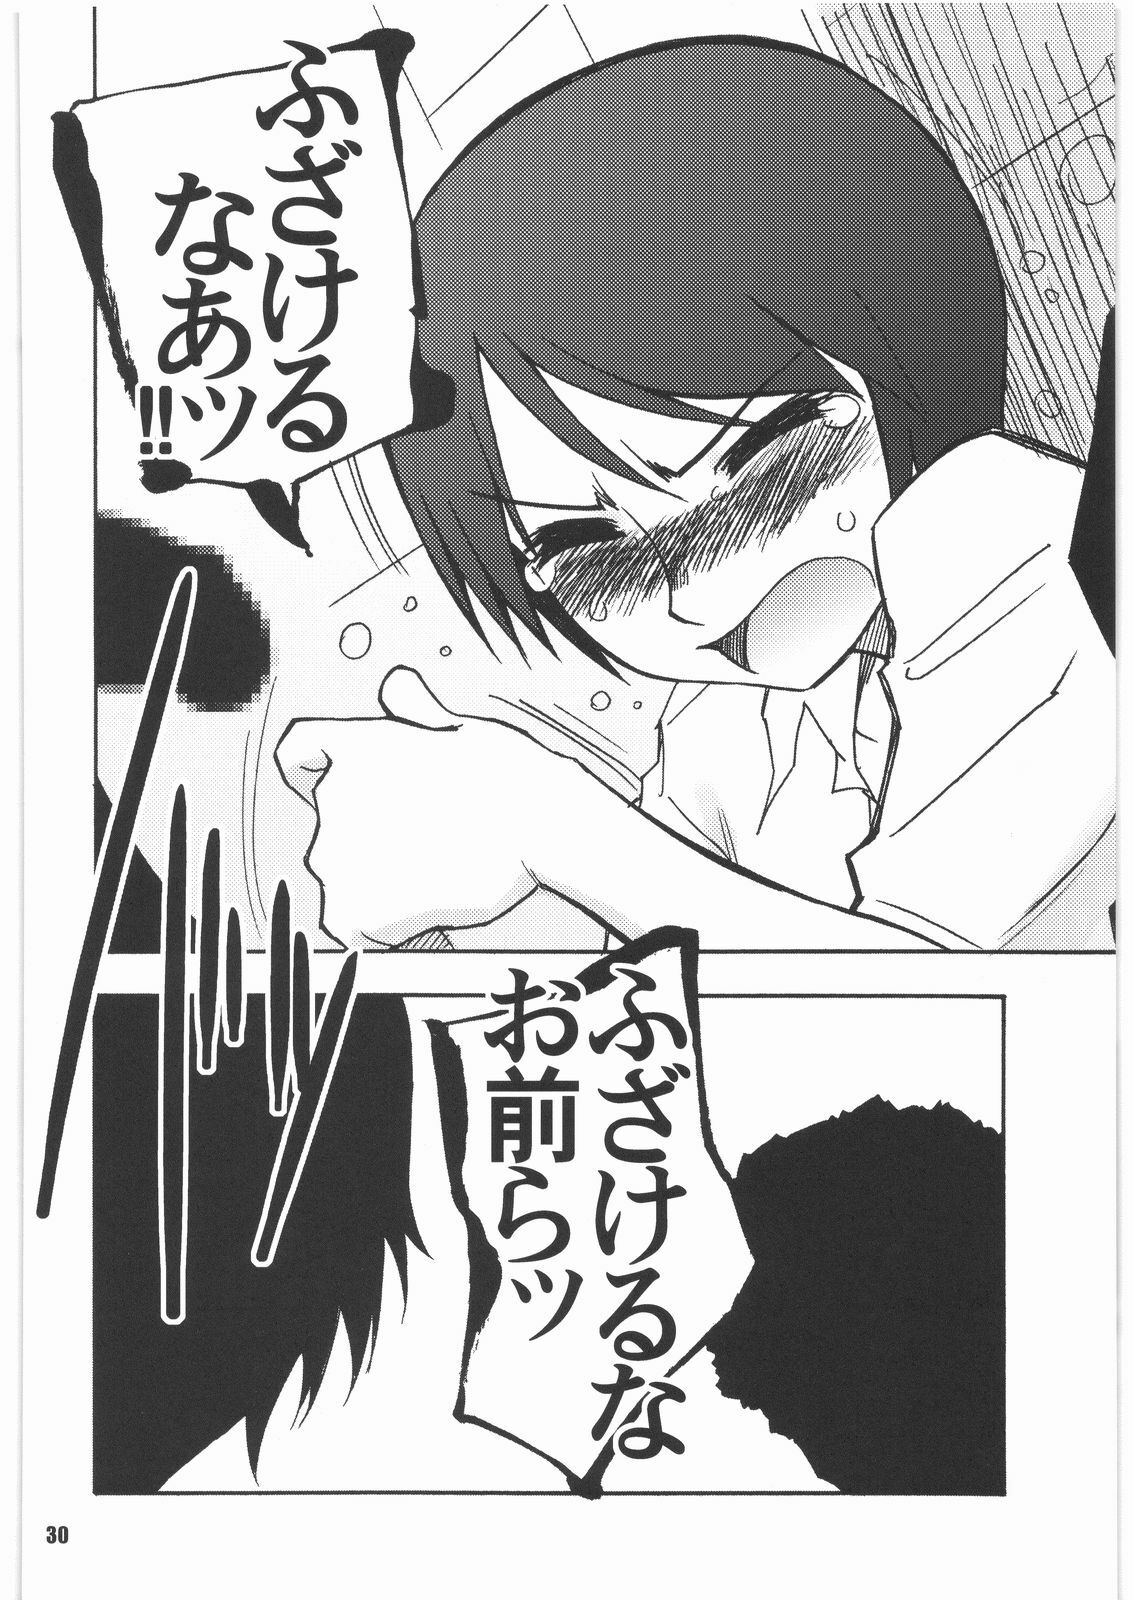 (SC39) [PLANET PORNO (Yamane)] SPREAD A THREAT (Yotsubato!) page 29 full